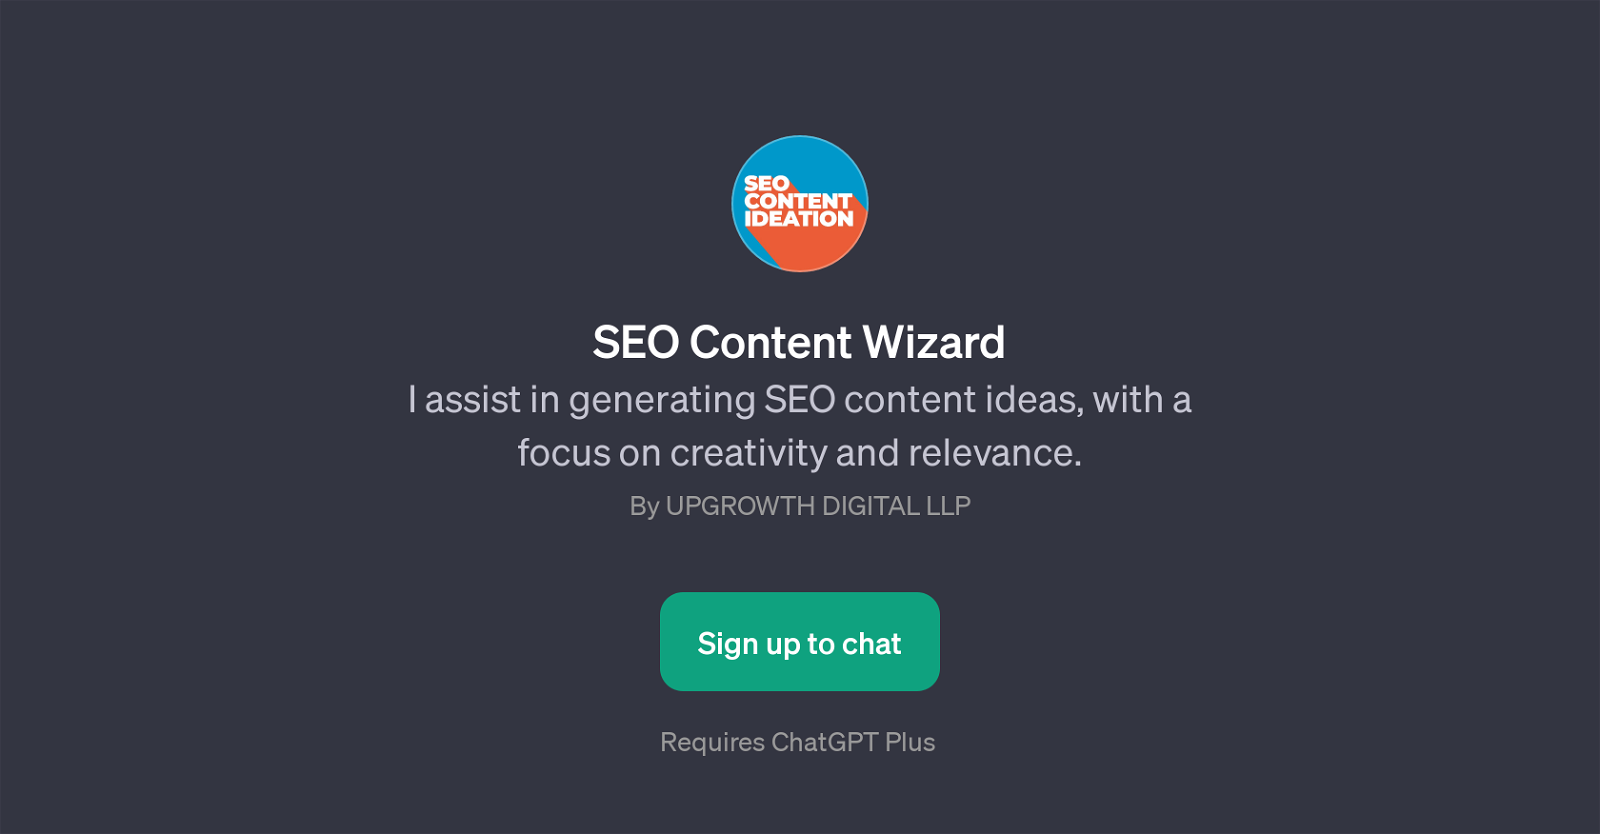 SEO Content Wizard website